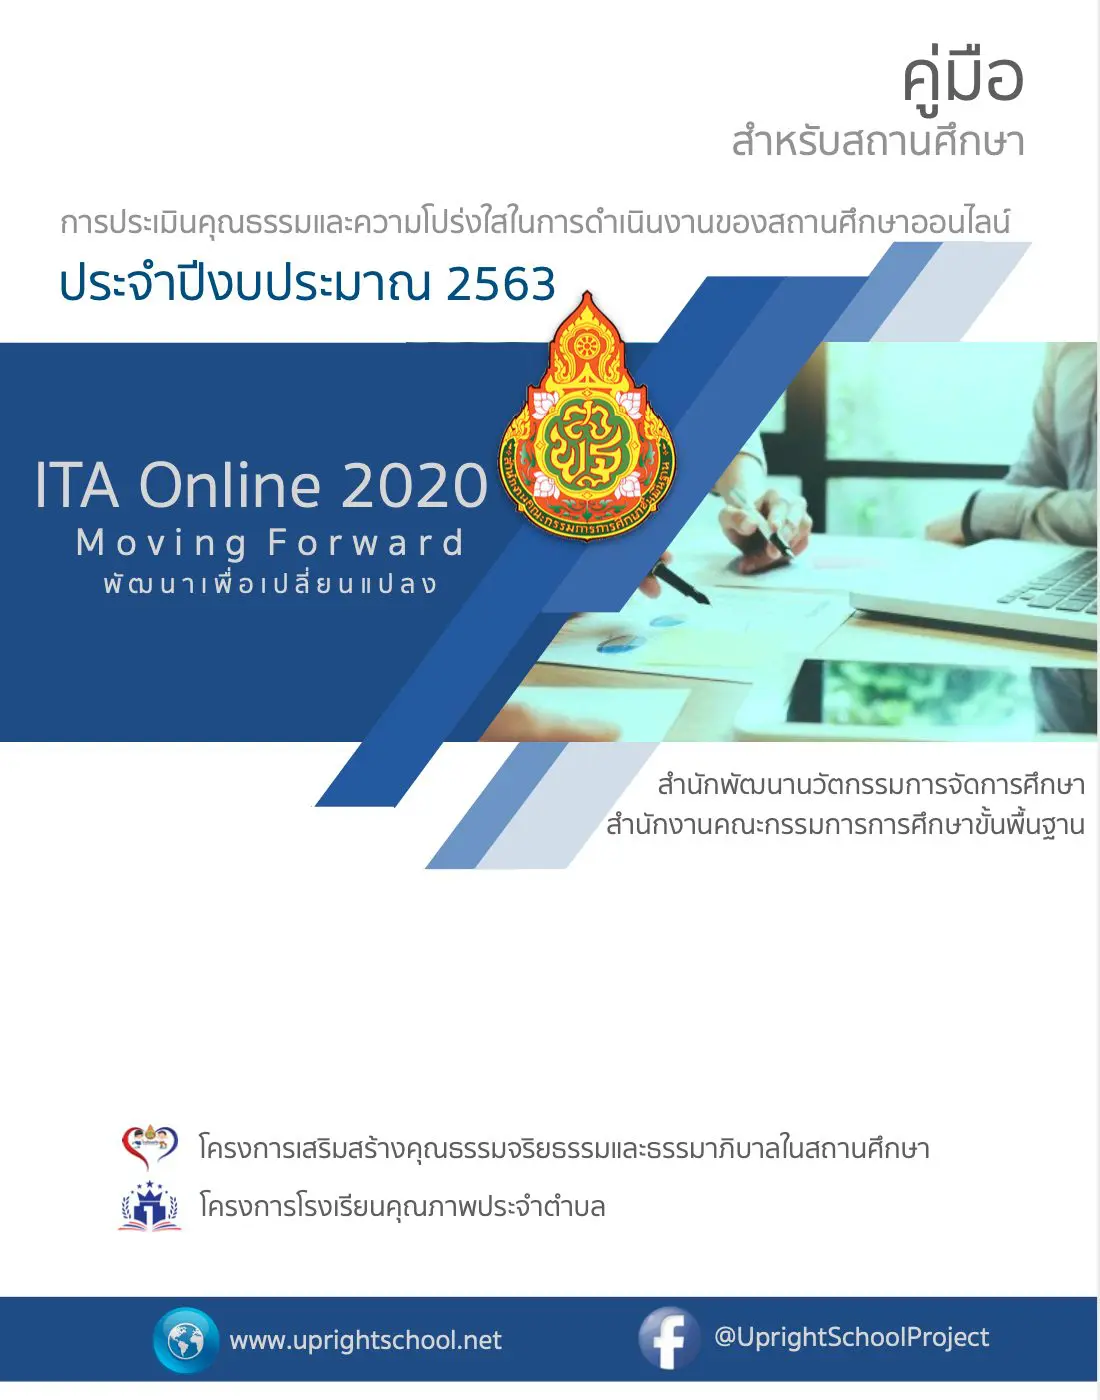 ดาวน์โหลดคู่มือ การประเมินคุณธรรมและความโปร่งใสในการดําเนินงานของสถานศึกษาออนไลน์ สำหรับสถานศึกษา ปี 2563 (ITA Online 2020)